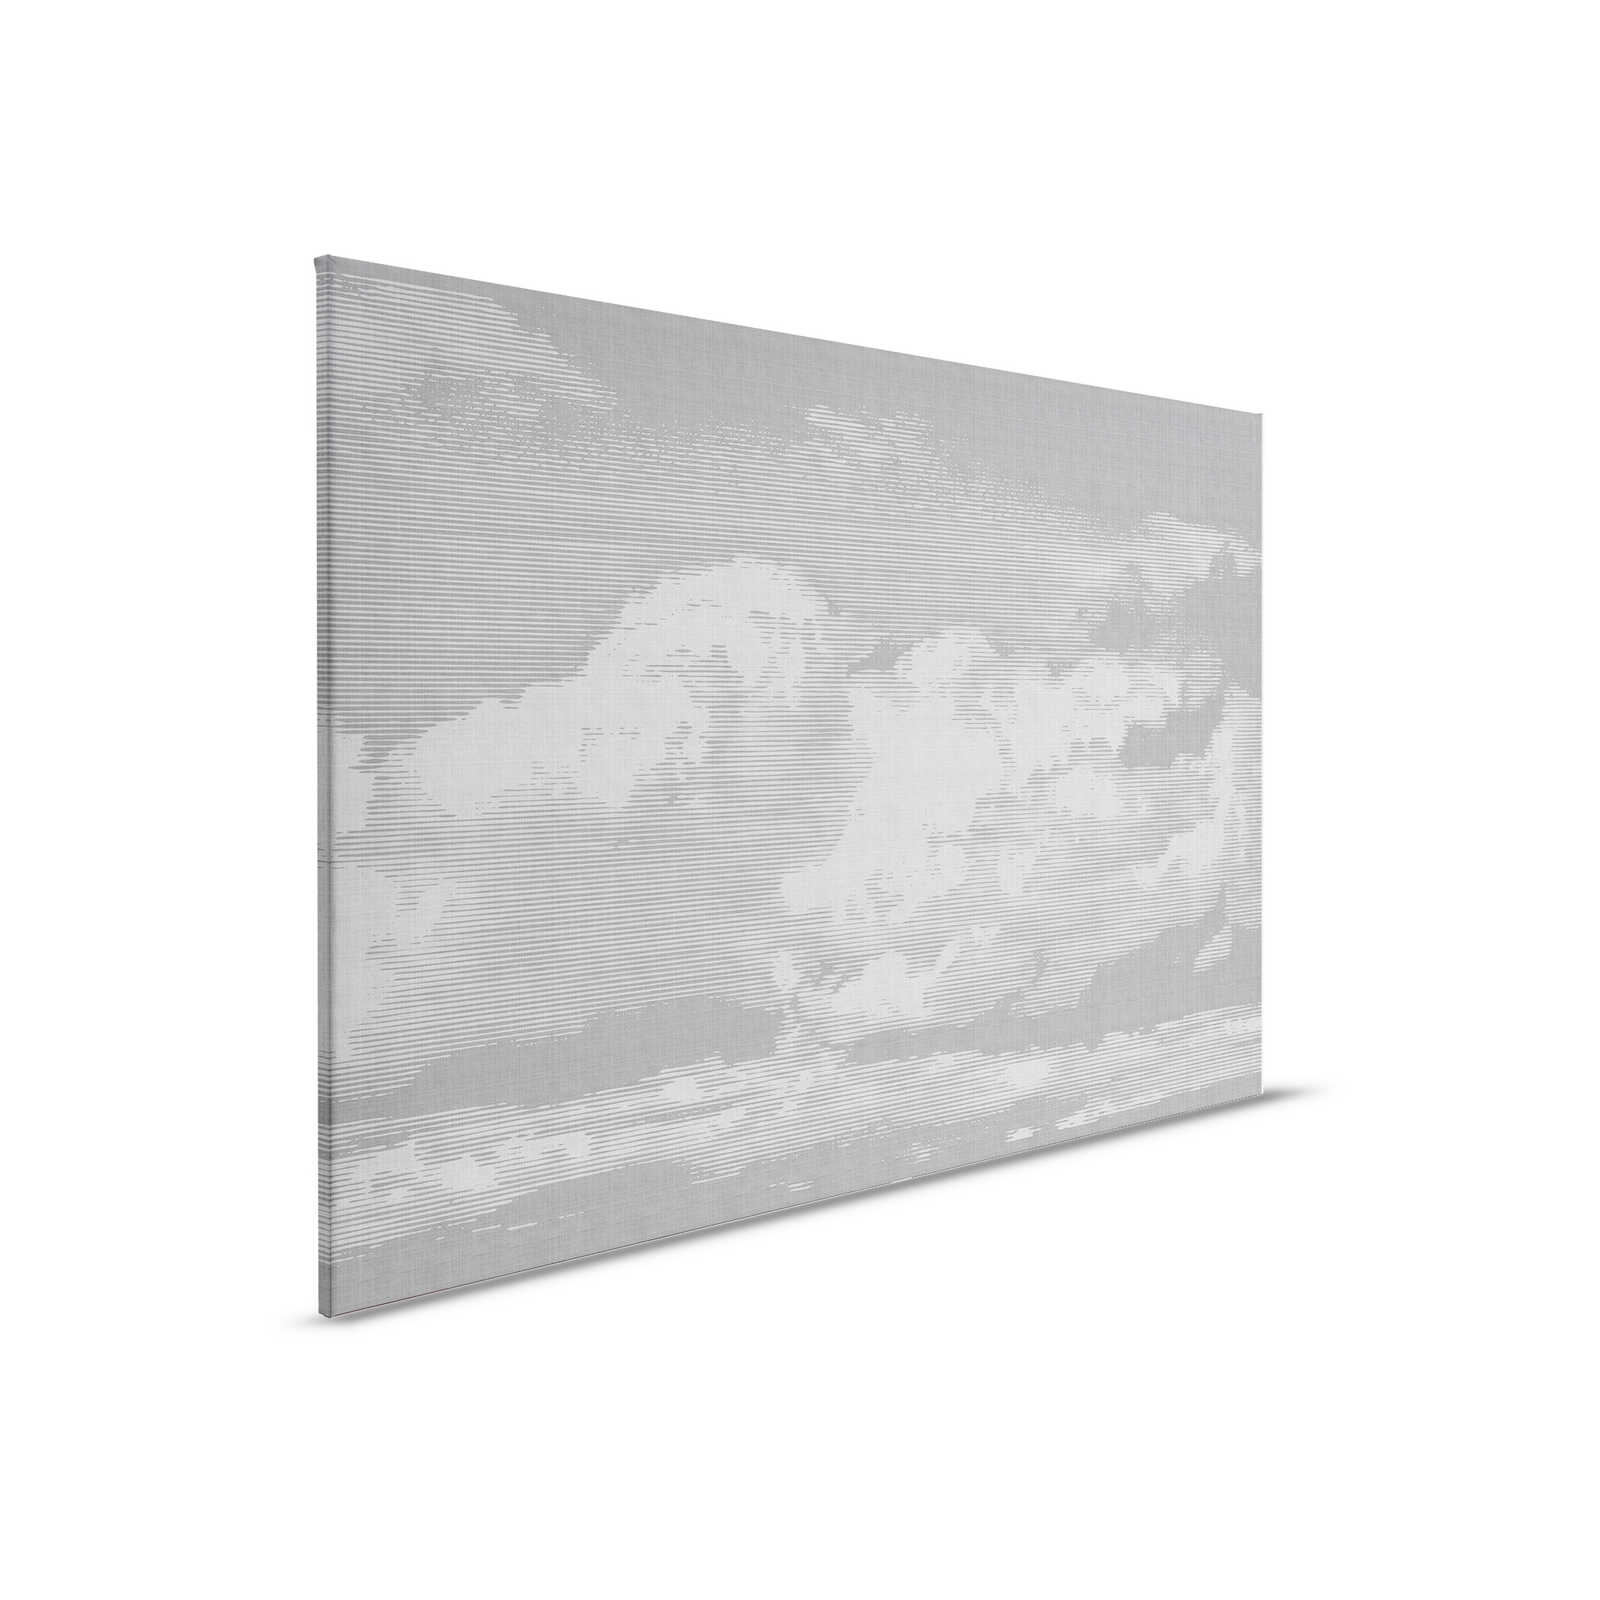 Clouds 2 - Himmlisches Leinwandbild in naturleinen Optik mit Wolkenmotiv – 0,90 m x 0,60 m
